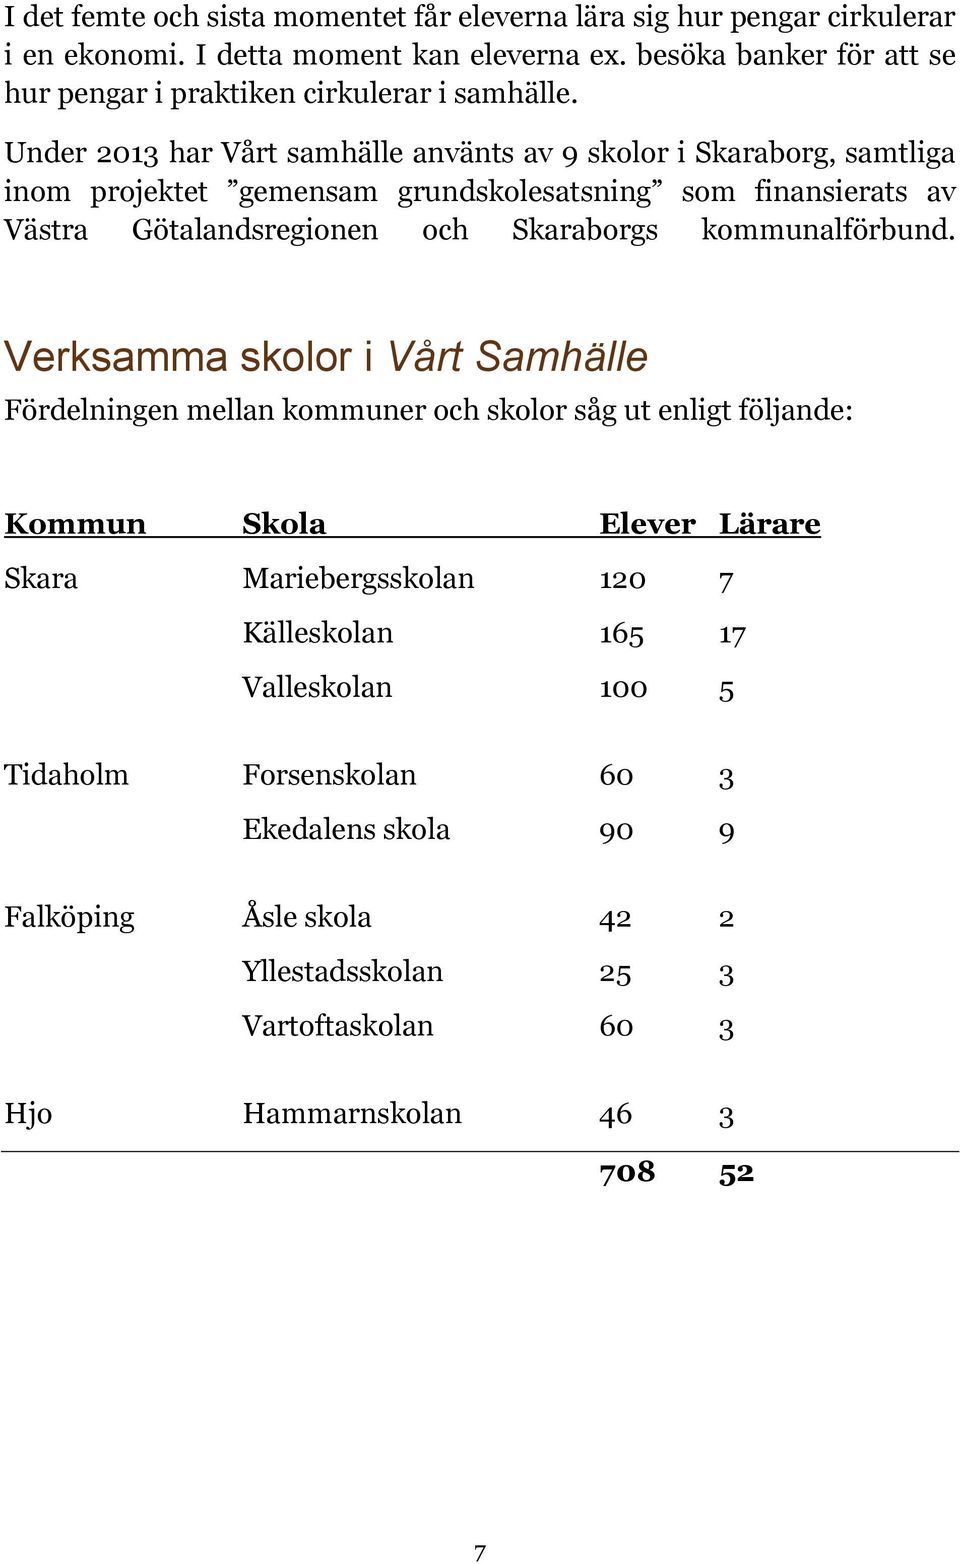 Under 2013 har Vårt samhälle använts av 9 skolor i Skaraborg, samtliga inom projektet gemensam grundskolesatsning som finansierats av Västra Götalandsregionen och Skaraborgs